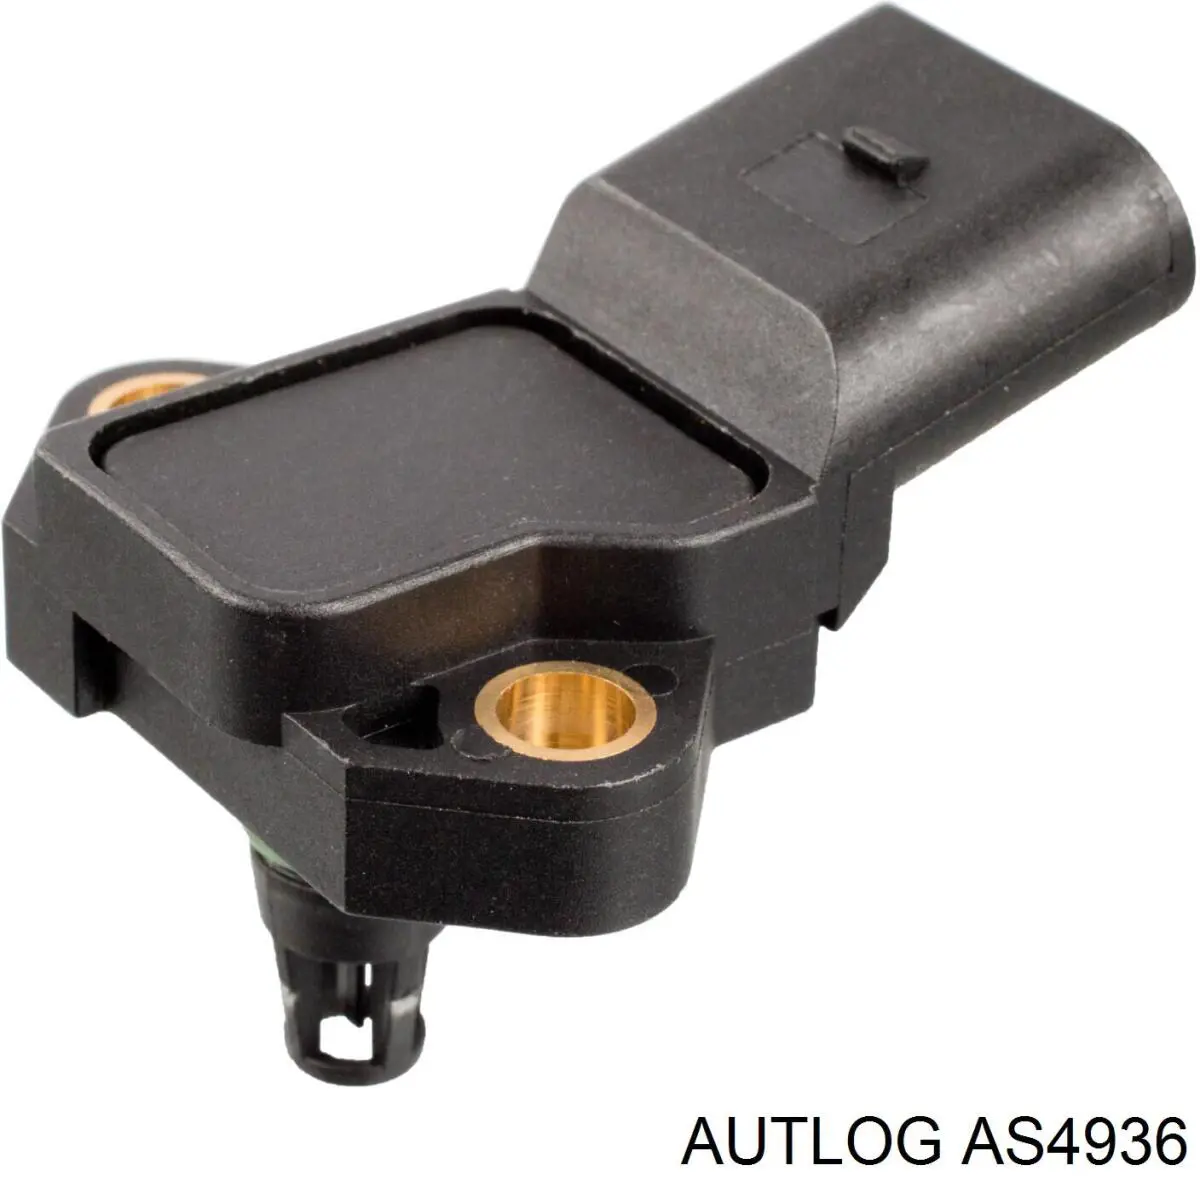 AS4936 Autlog sensor de presion de carga (inyeccion de aire turbina)